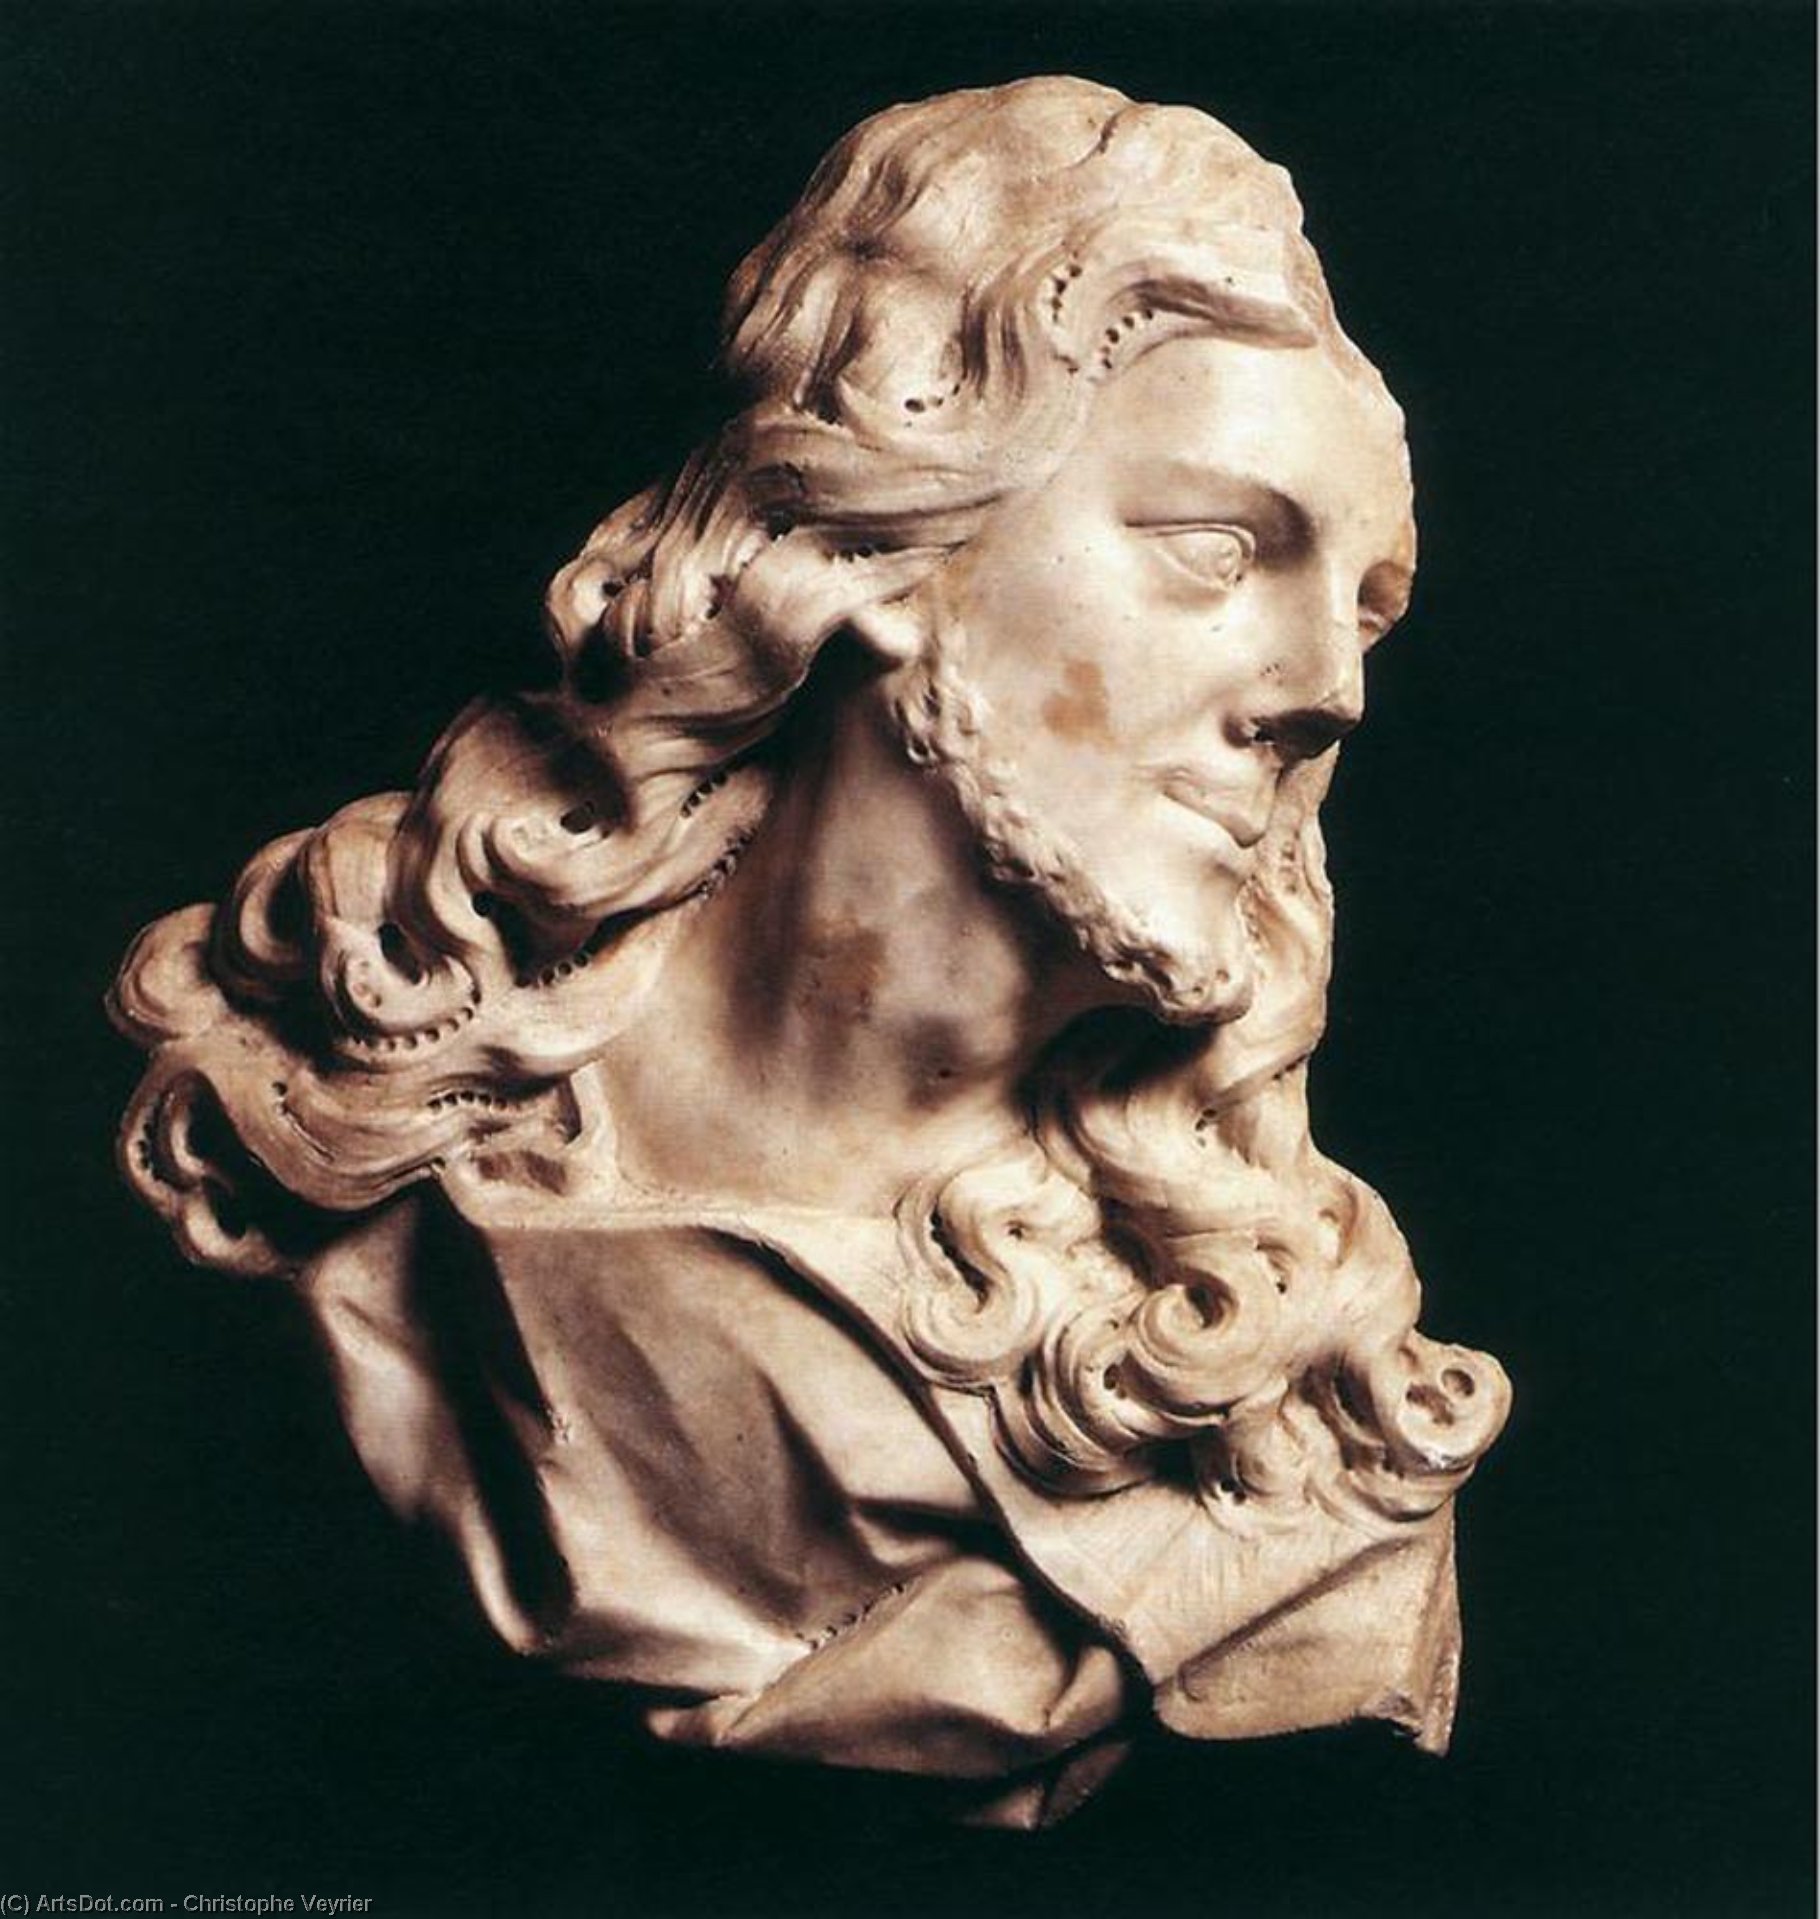 WikiOO.org - Enciklopedija likovnih umjetnosti - Slikarstvo, umjetnička djela Christophe Veyrier - Bust of Christ